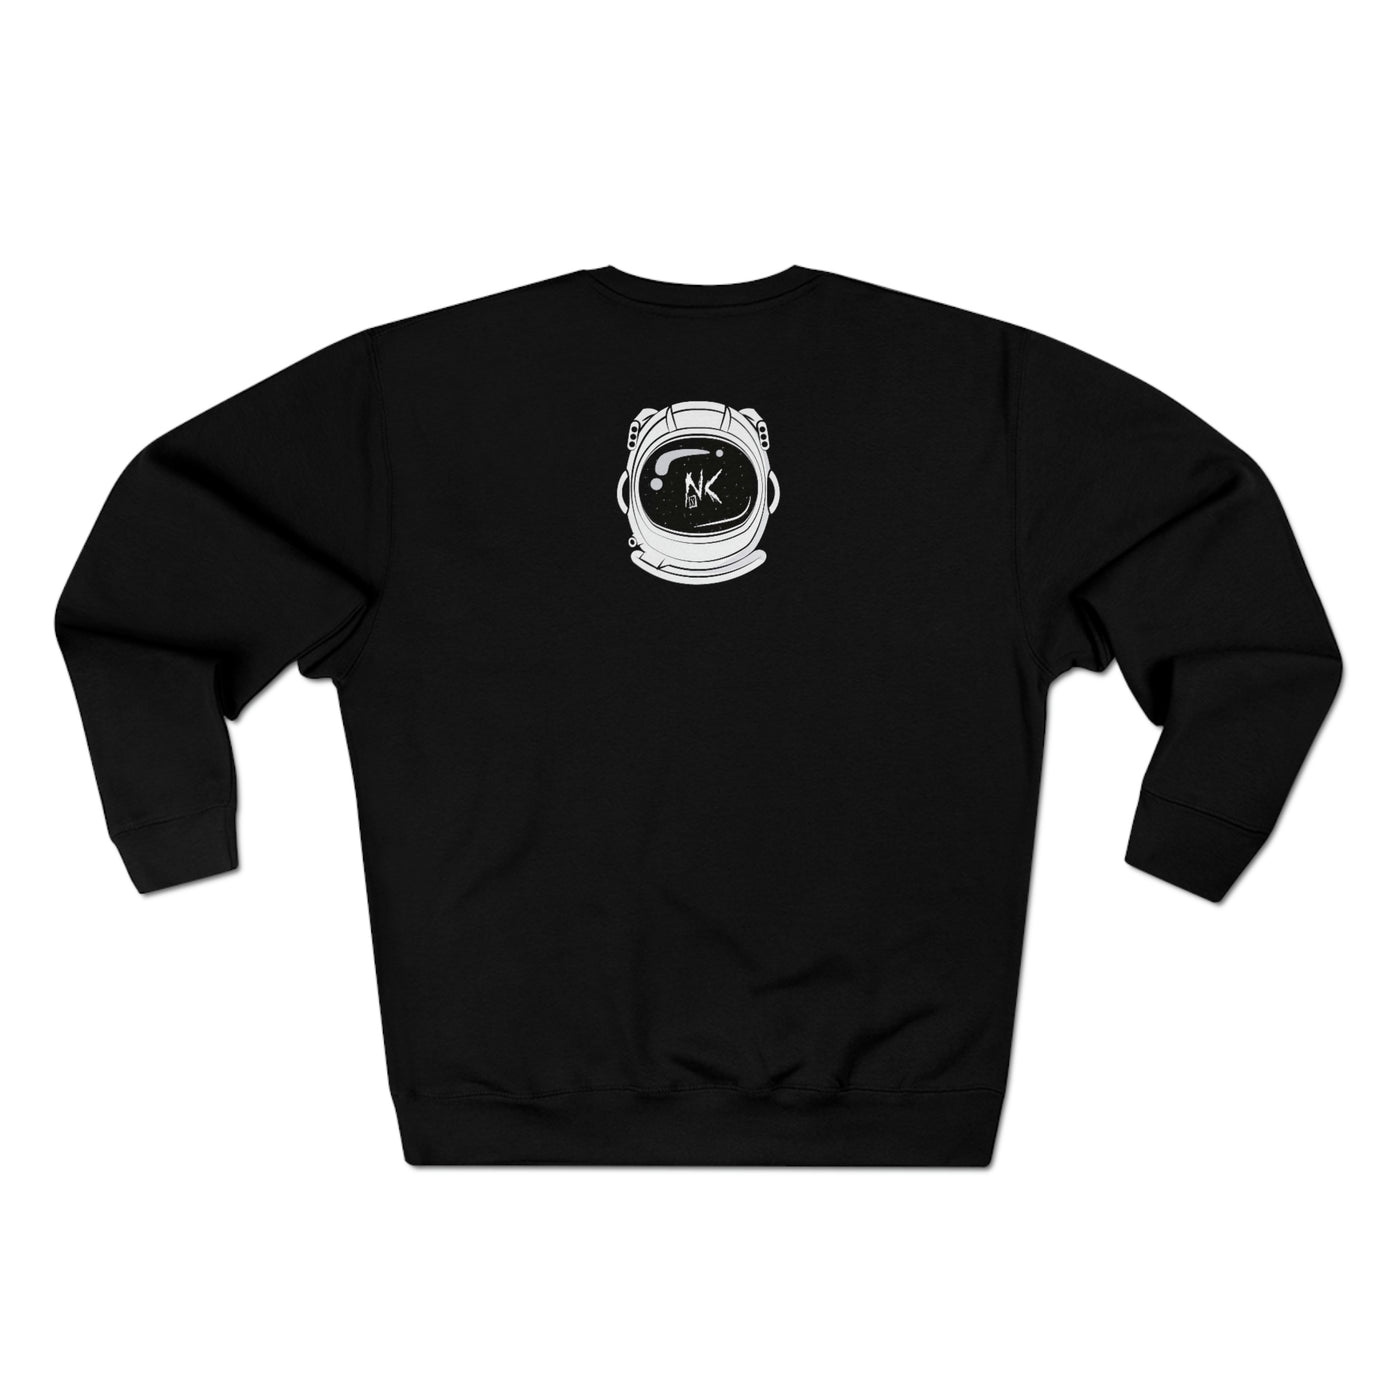 "Noceilings Premium Crewneck Sweatshirt - NoCeilingsClothing